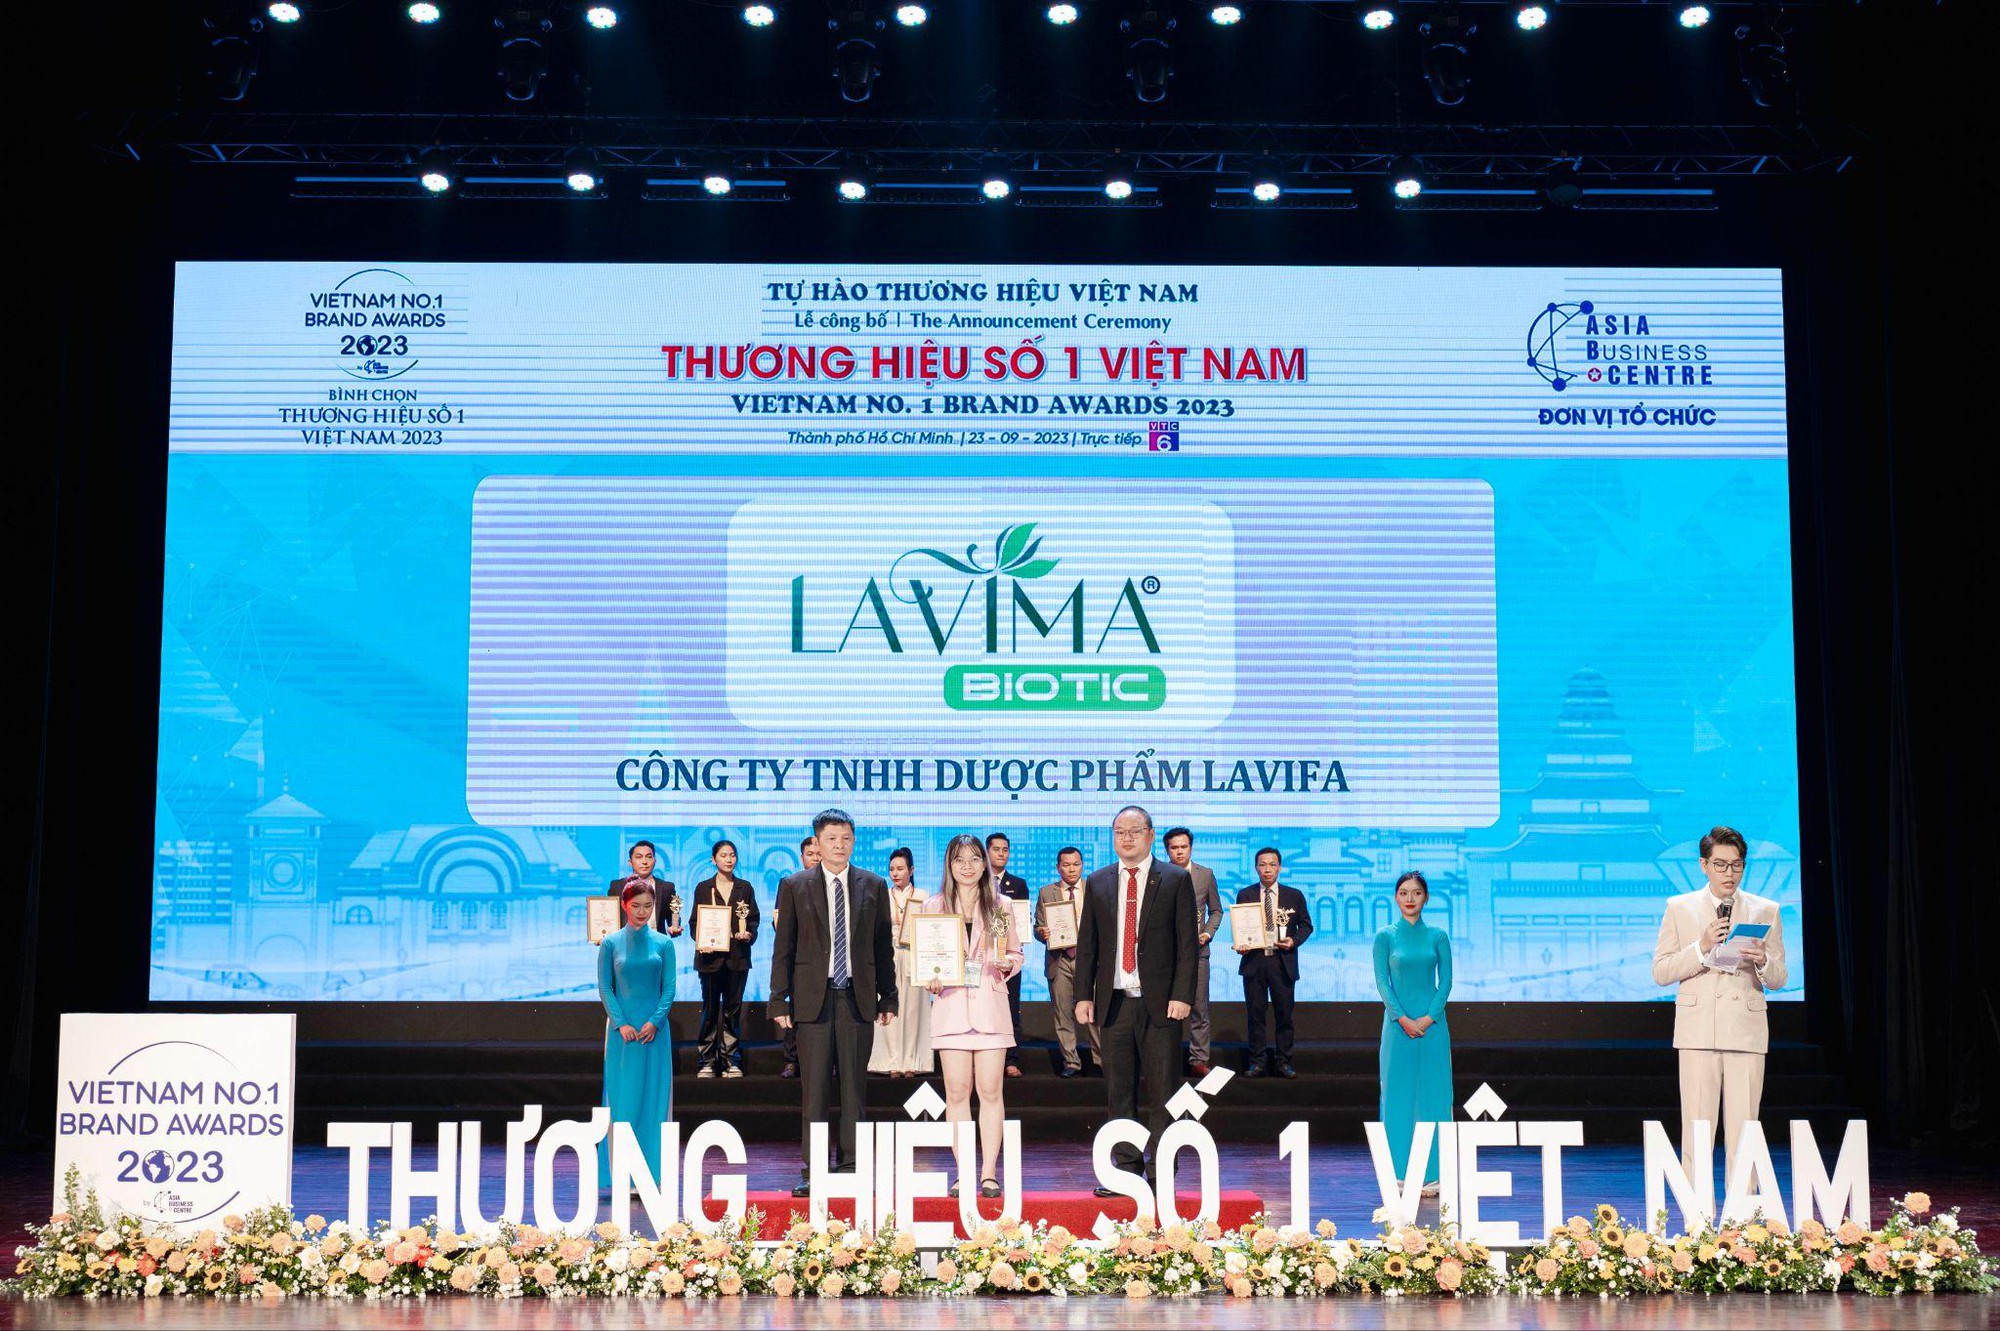 Sản phẩm Việt Phương Thoa review mới đây thuộc top bán chạy hàng đầu TikTok Shop - Ảnh 4.